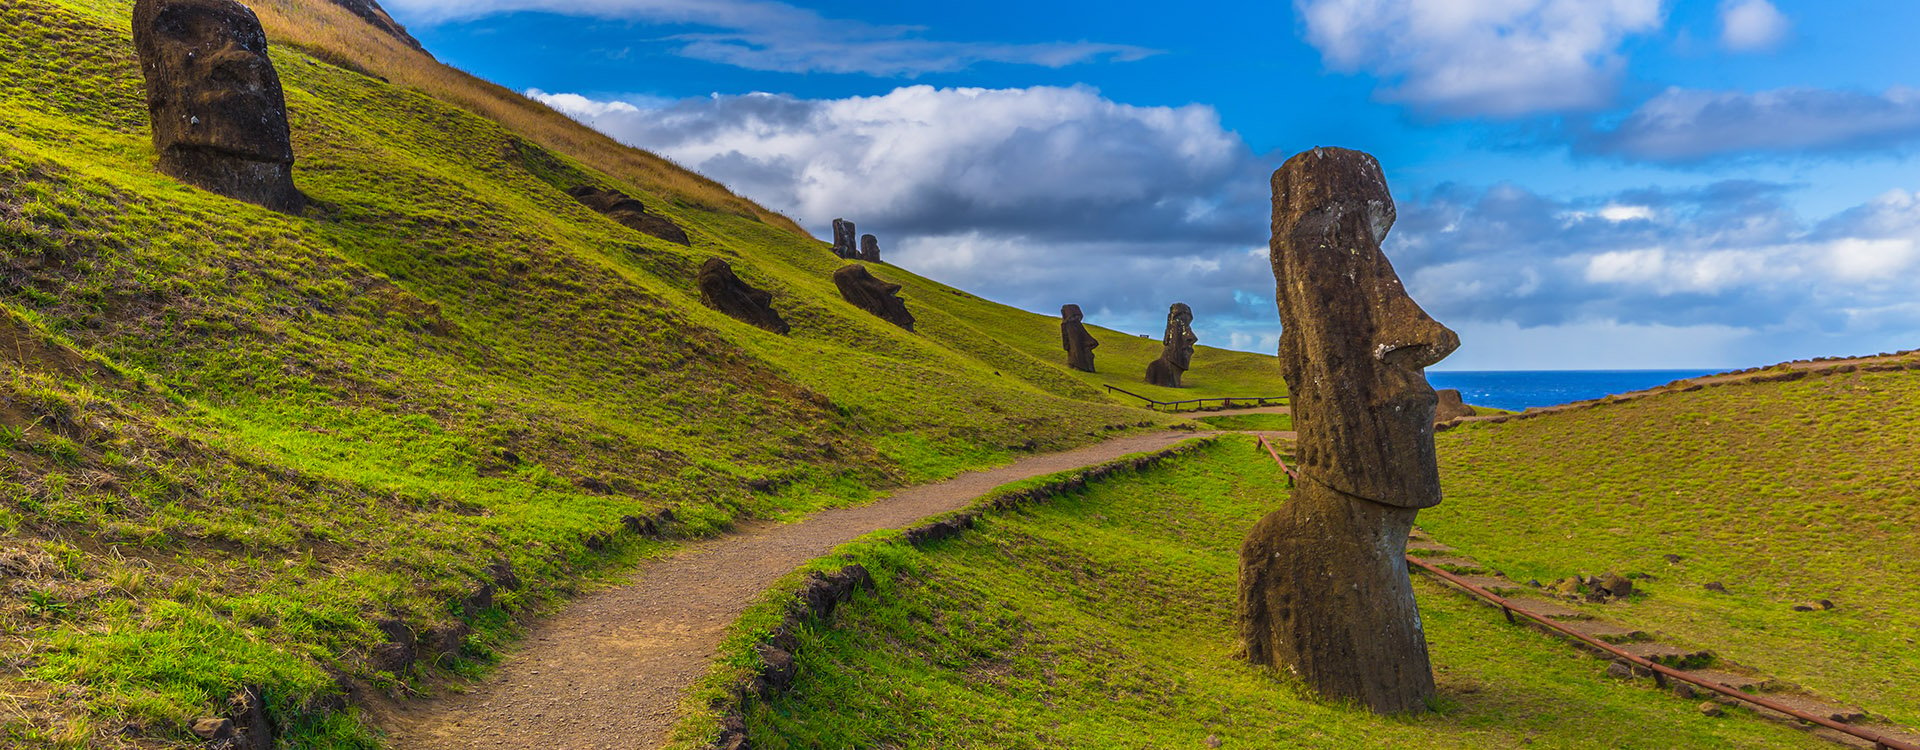 Moai statues of Ranu Raraku, Easter Island